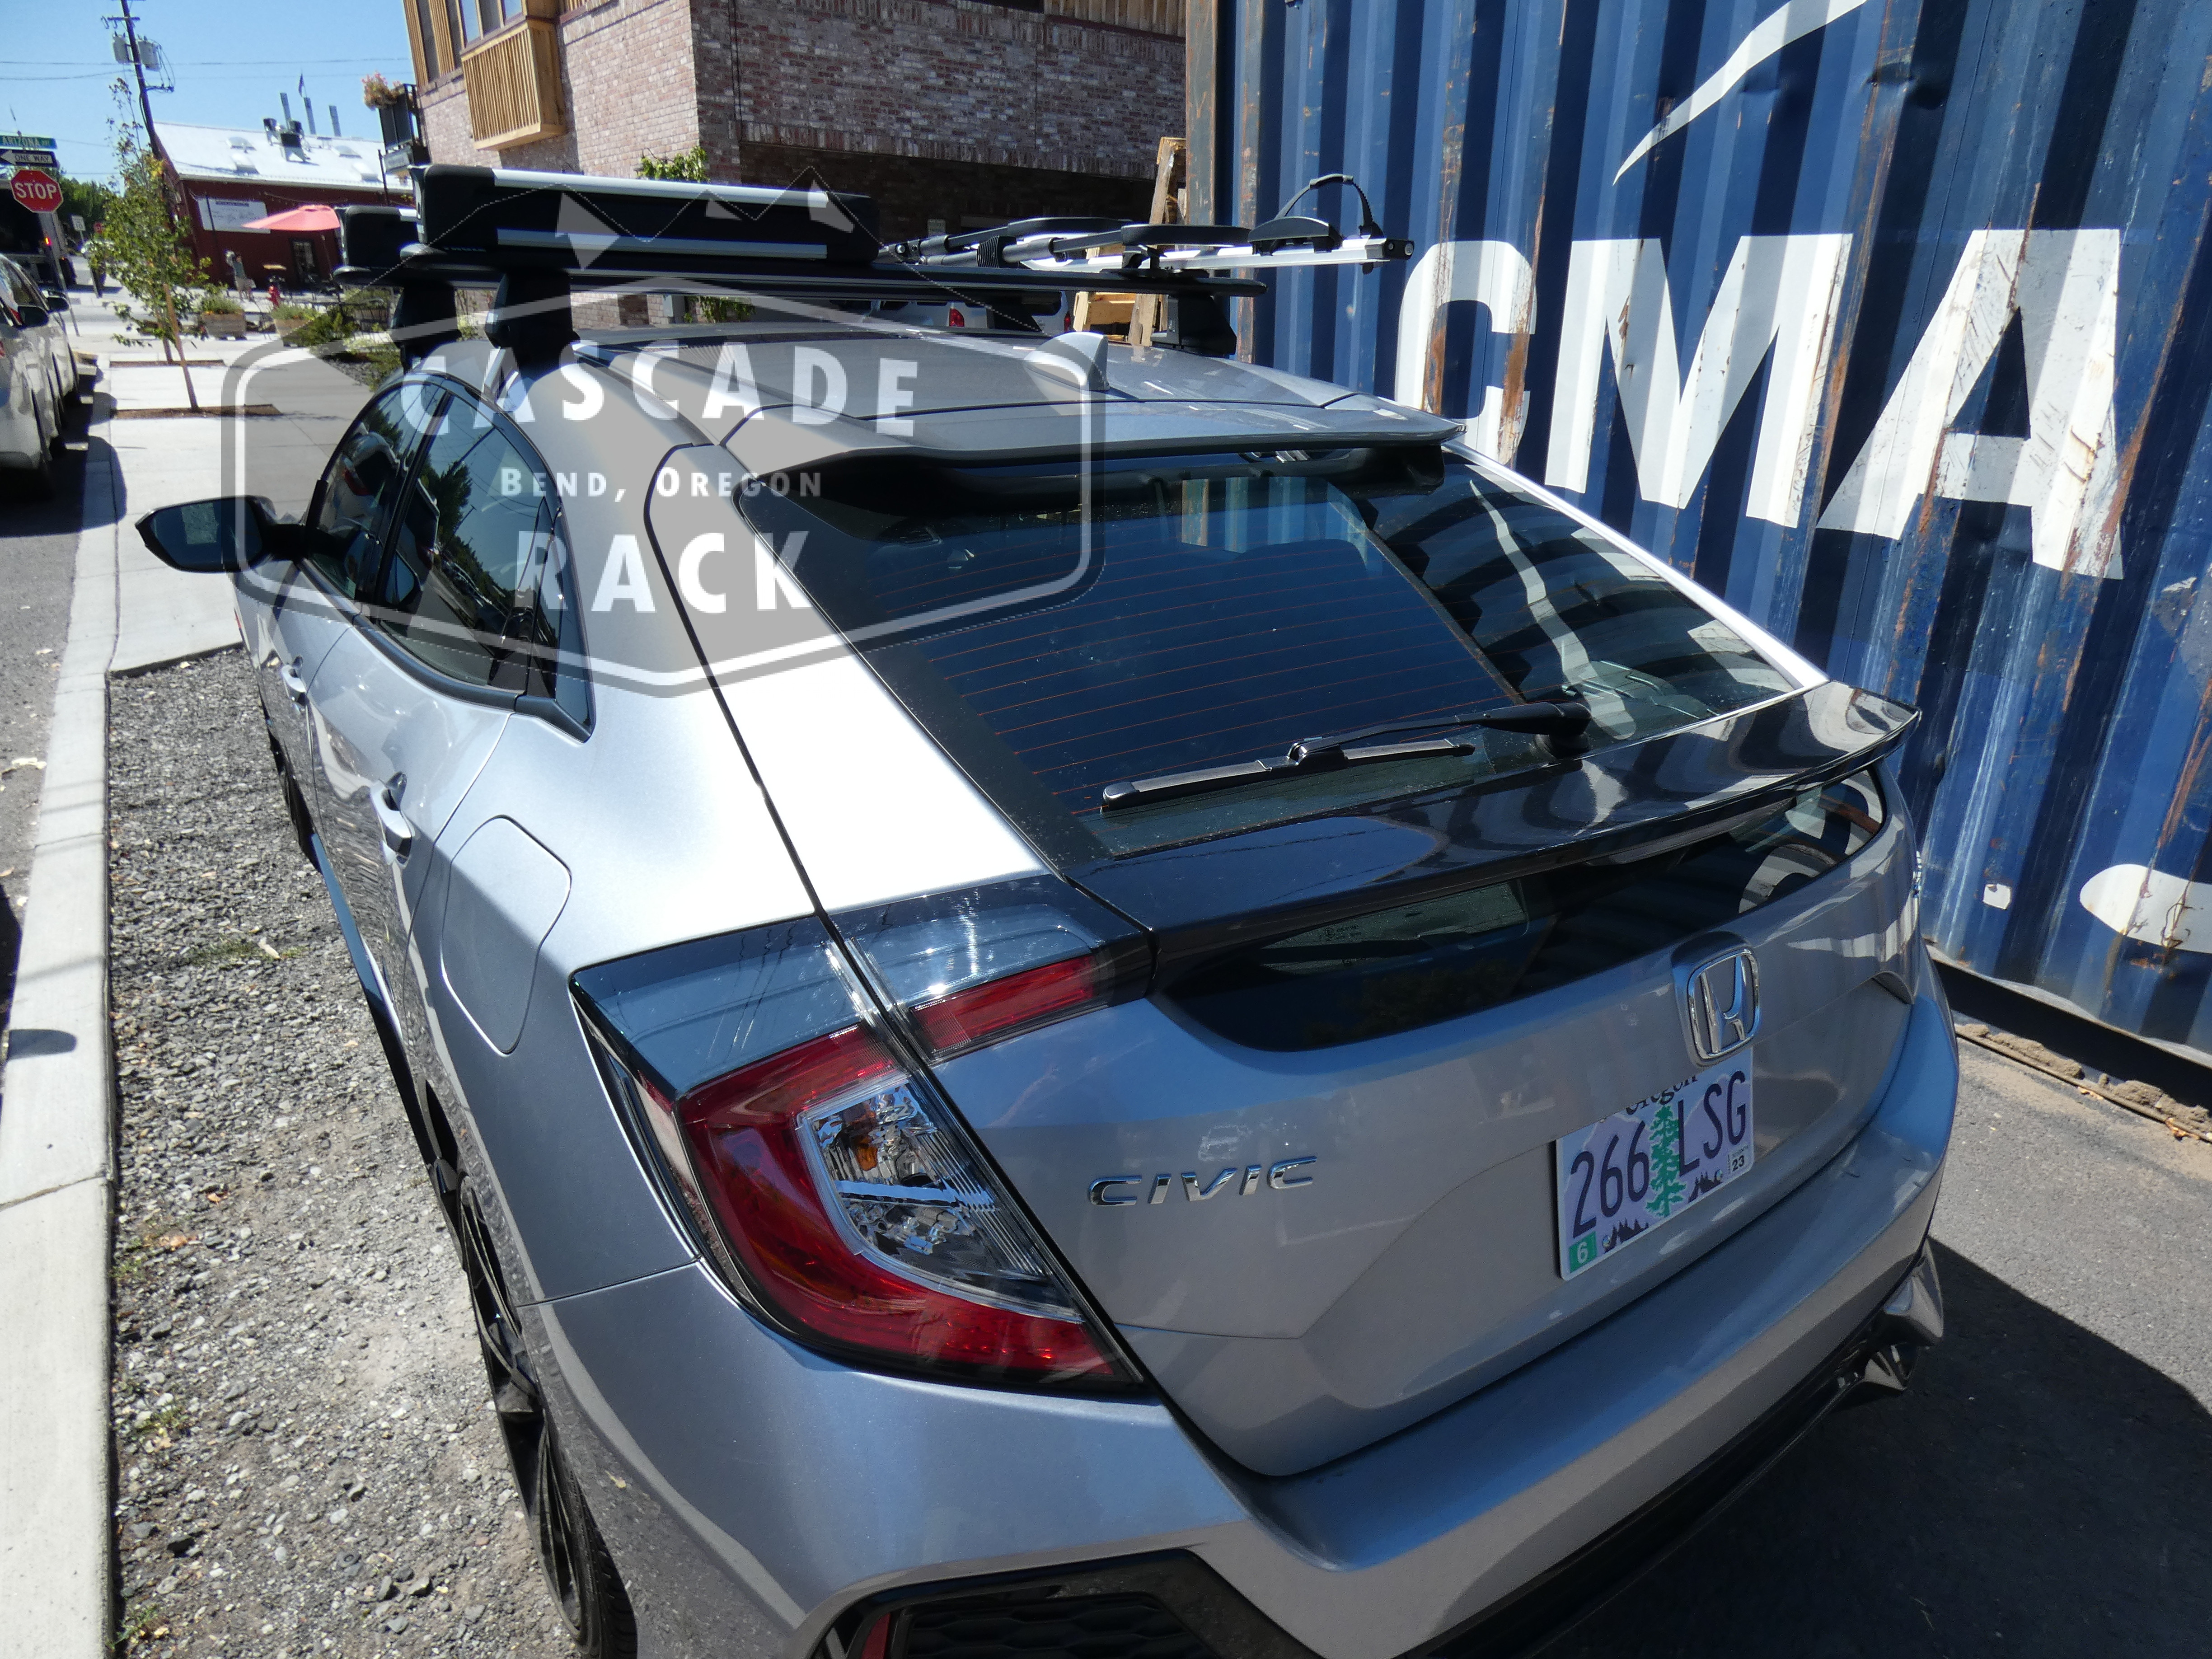 2019 Honda Civic Sport - Roof Rack, Ski Rack and Bike Rack - Thule